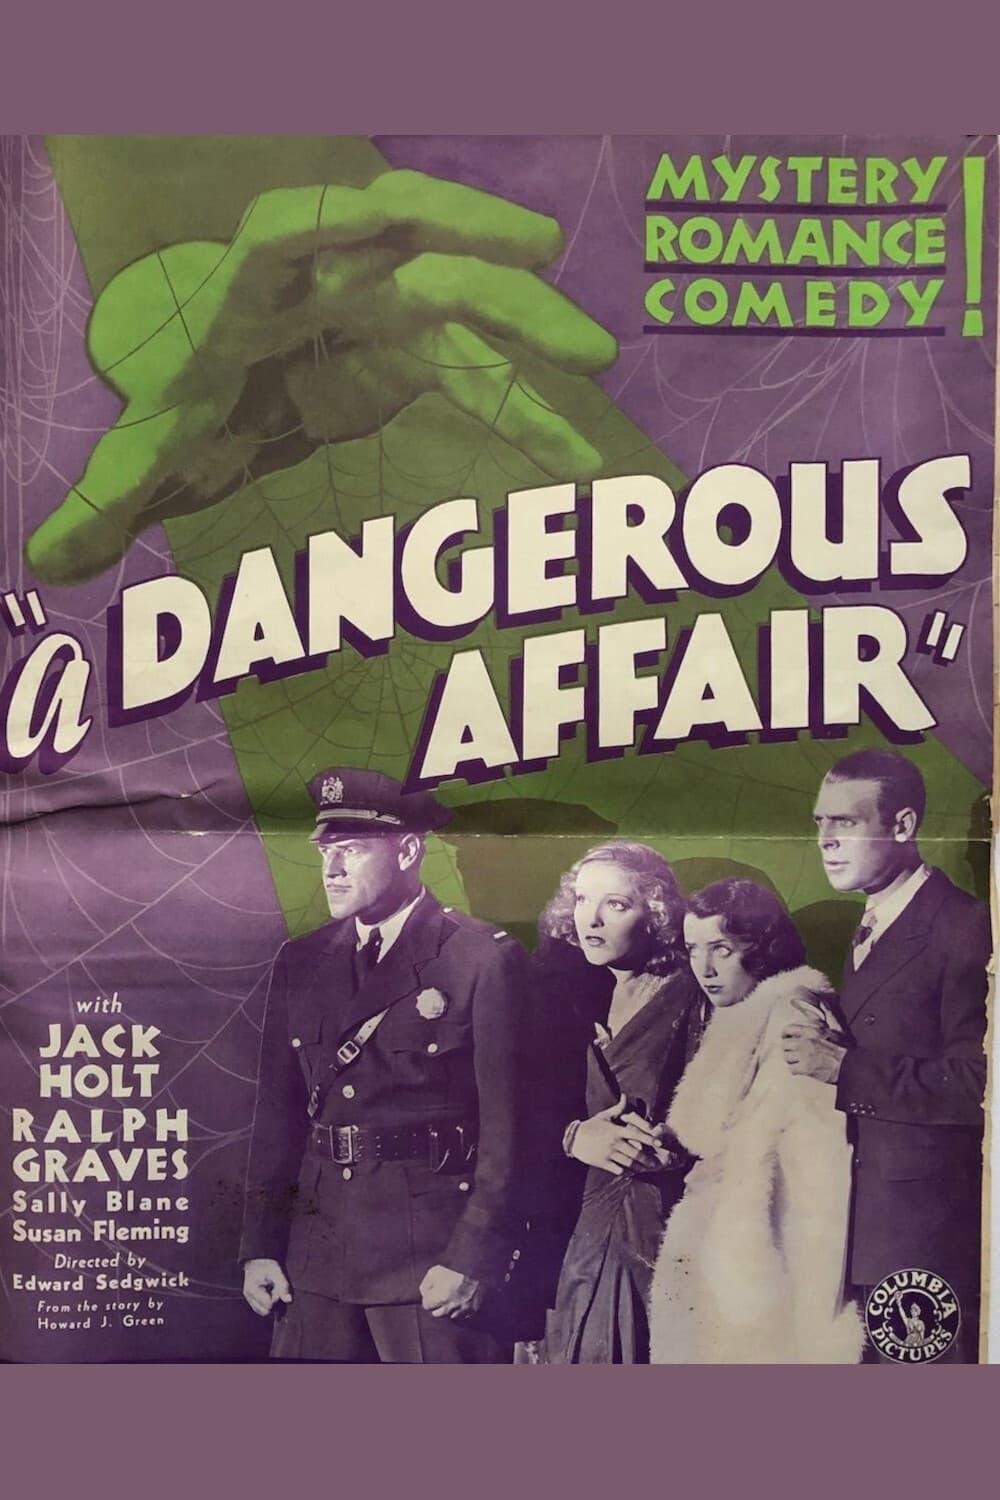 A Dangerous Affair poster